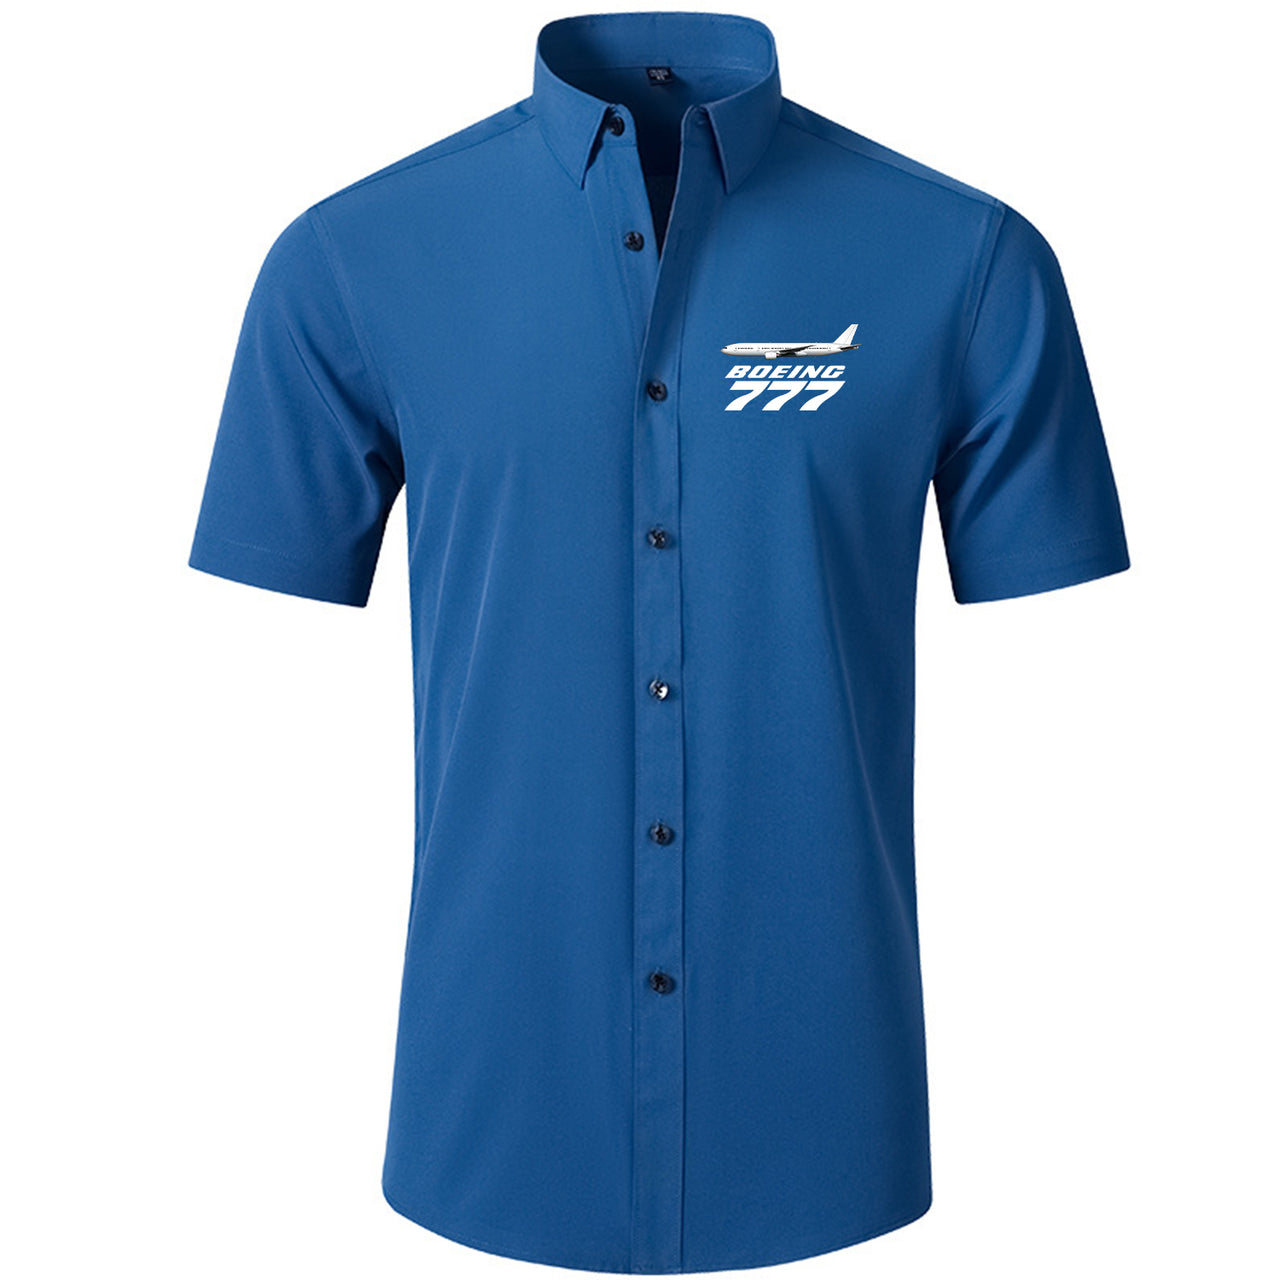 The Boeing 777 Designed Short Sleeve Shirts